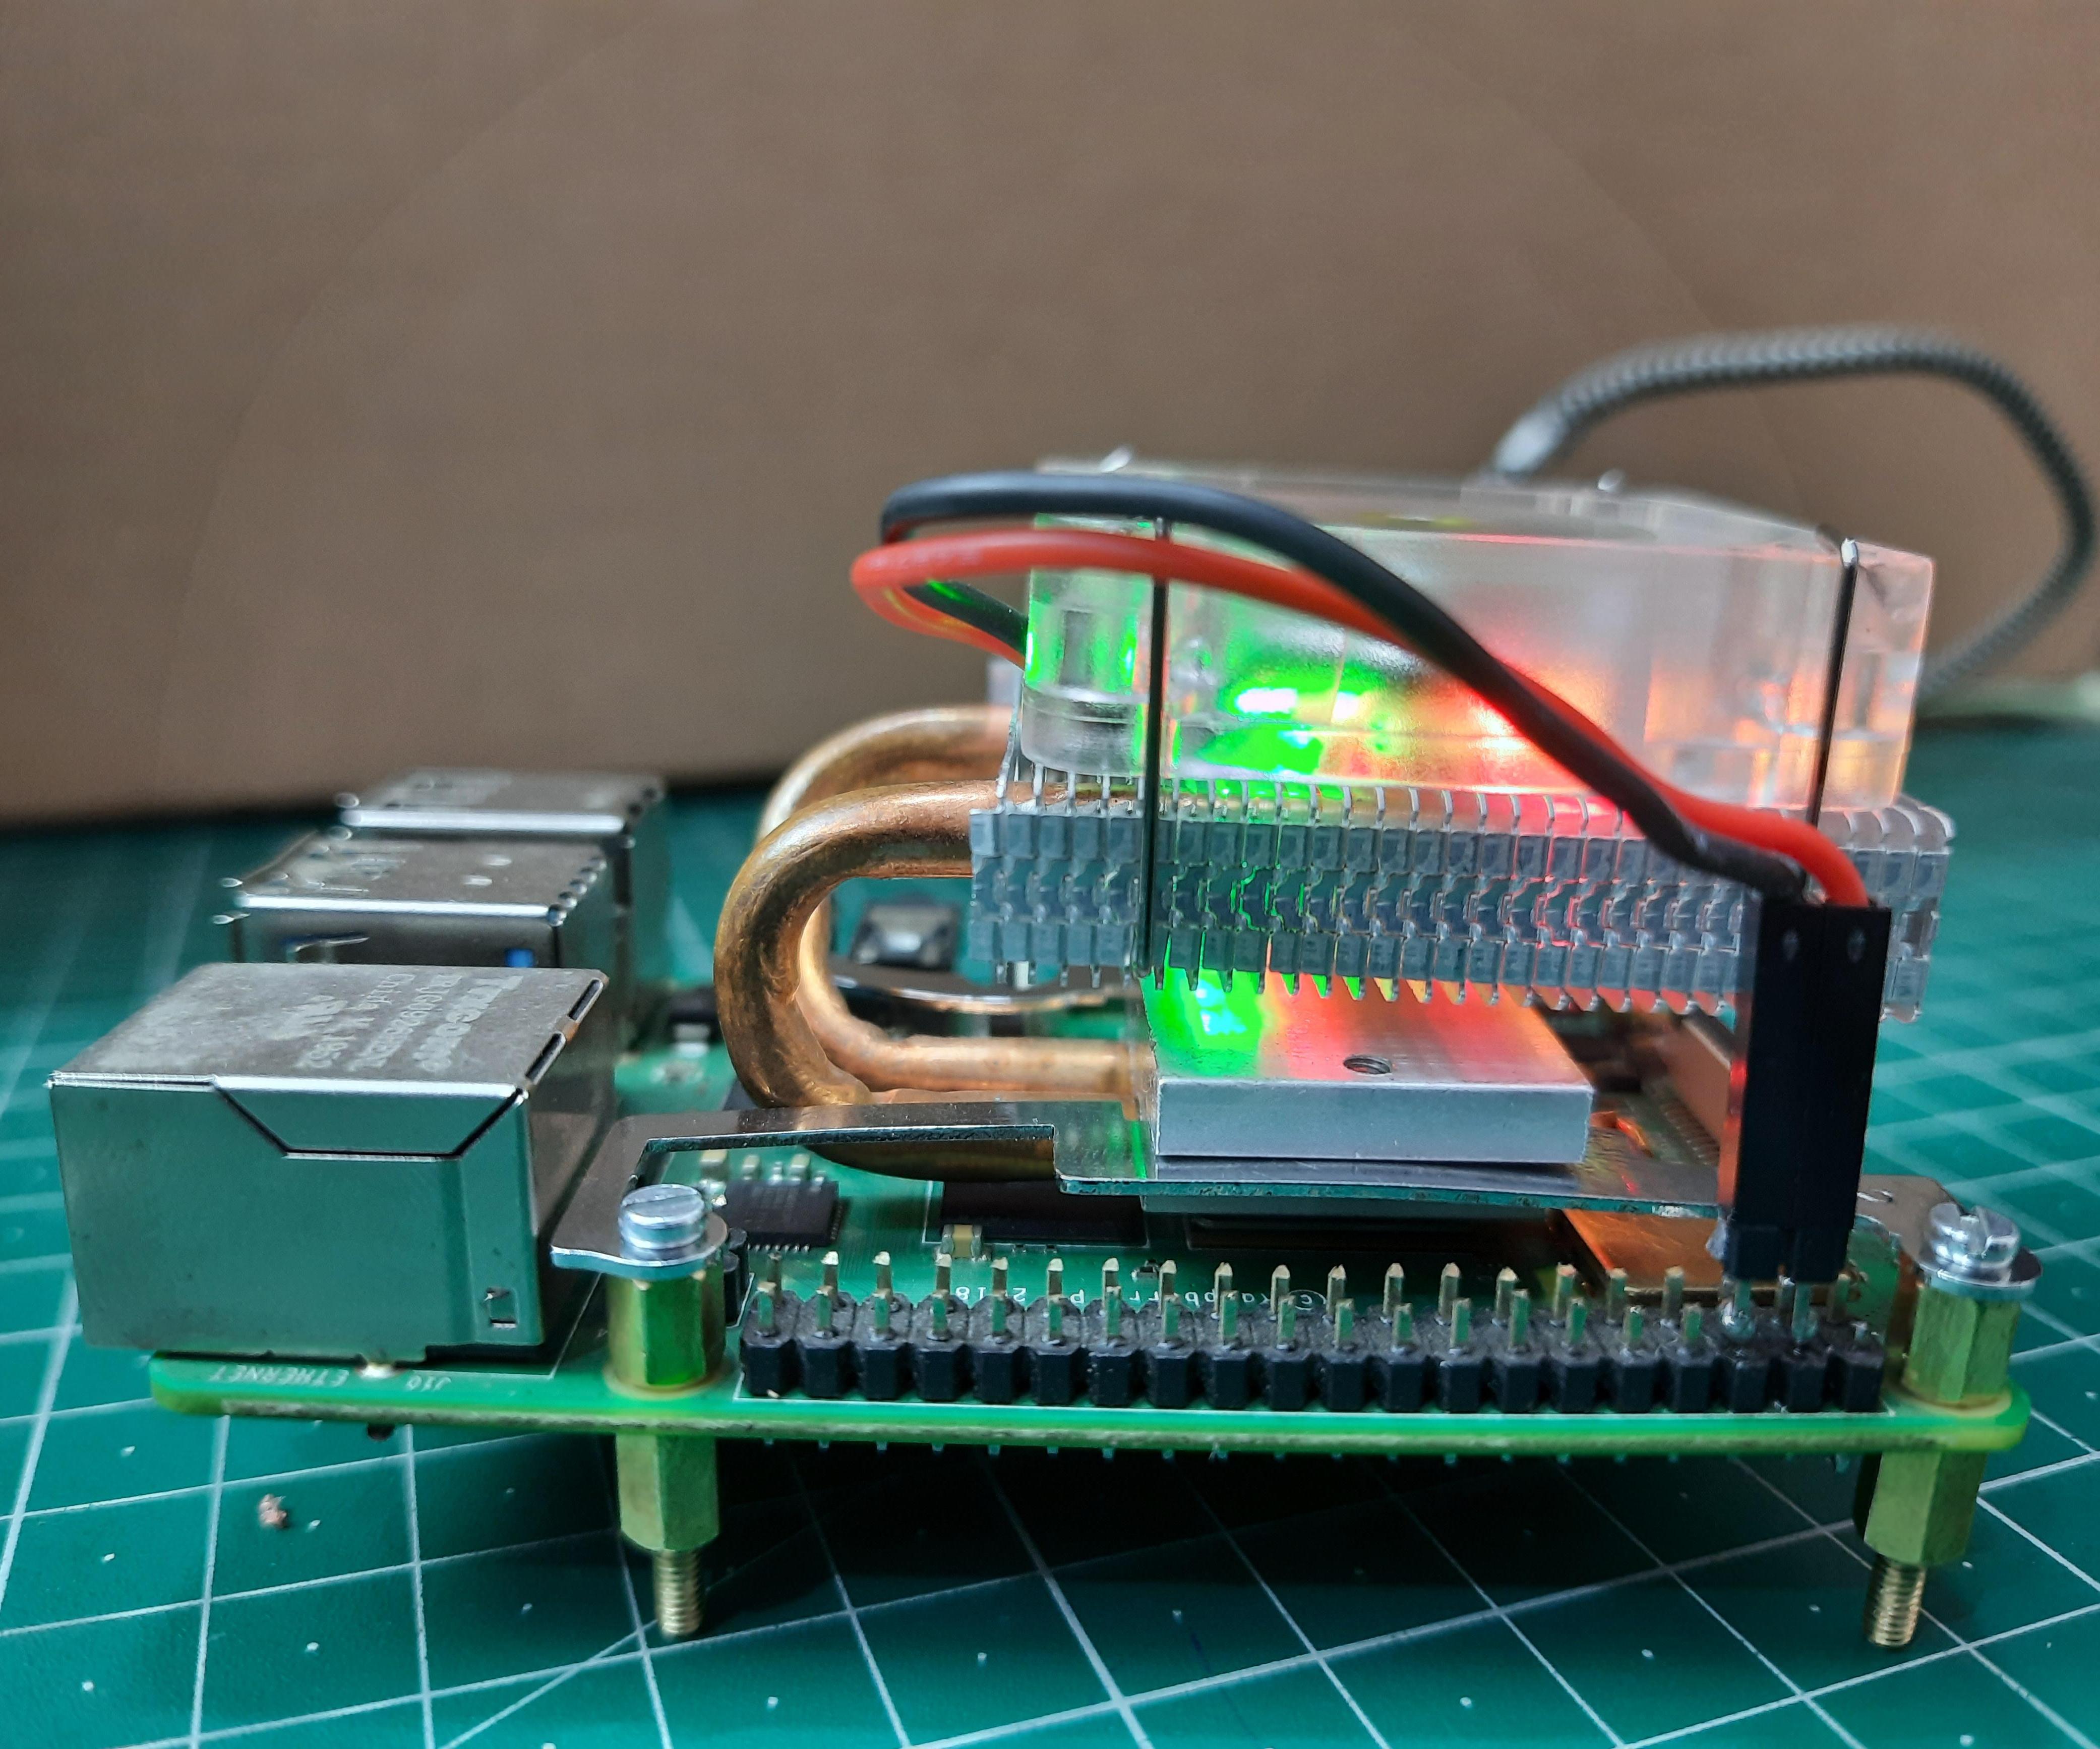 Installing Stock Cooler on Raspberry Pi